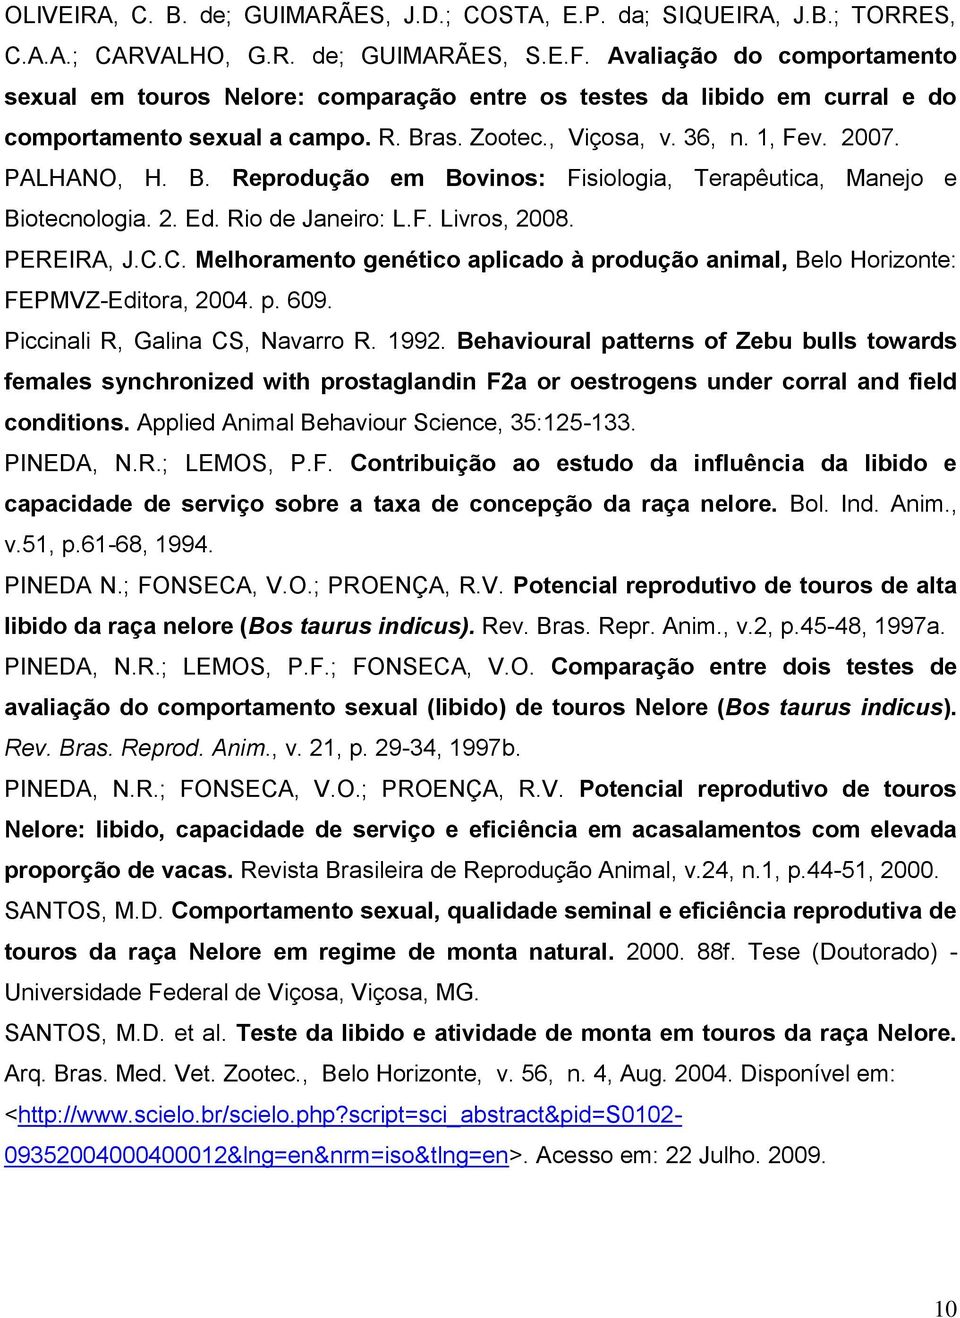 as. Zootec., Viçosa, v. 36, n. 1, Fev. 2007. PALHANO, H. B. Reprodução em Bovinos: Fisiologia, Terapêutica, Manejo e Biotecnologia. 2. Ed. Rio de Janeiro: L.F. Livros, 2008. PEREIRA, J.C.